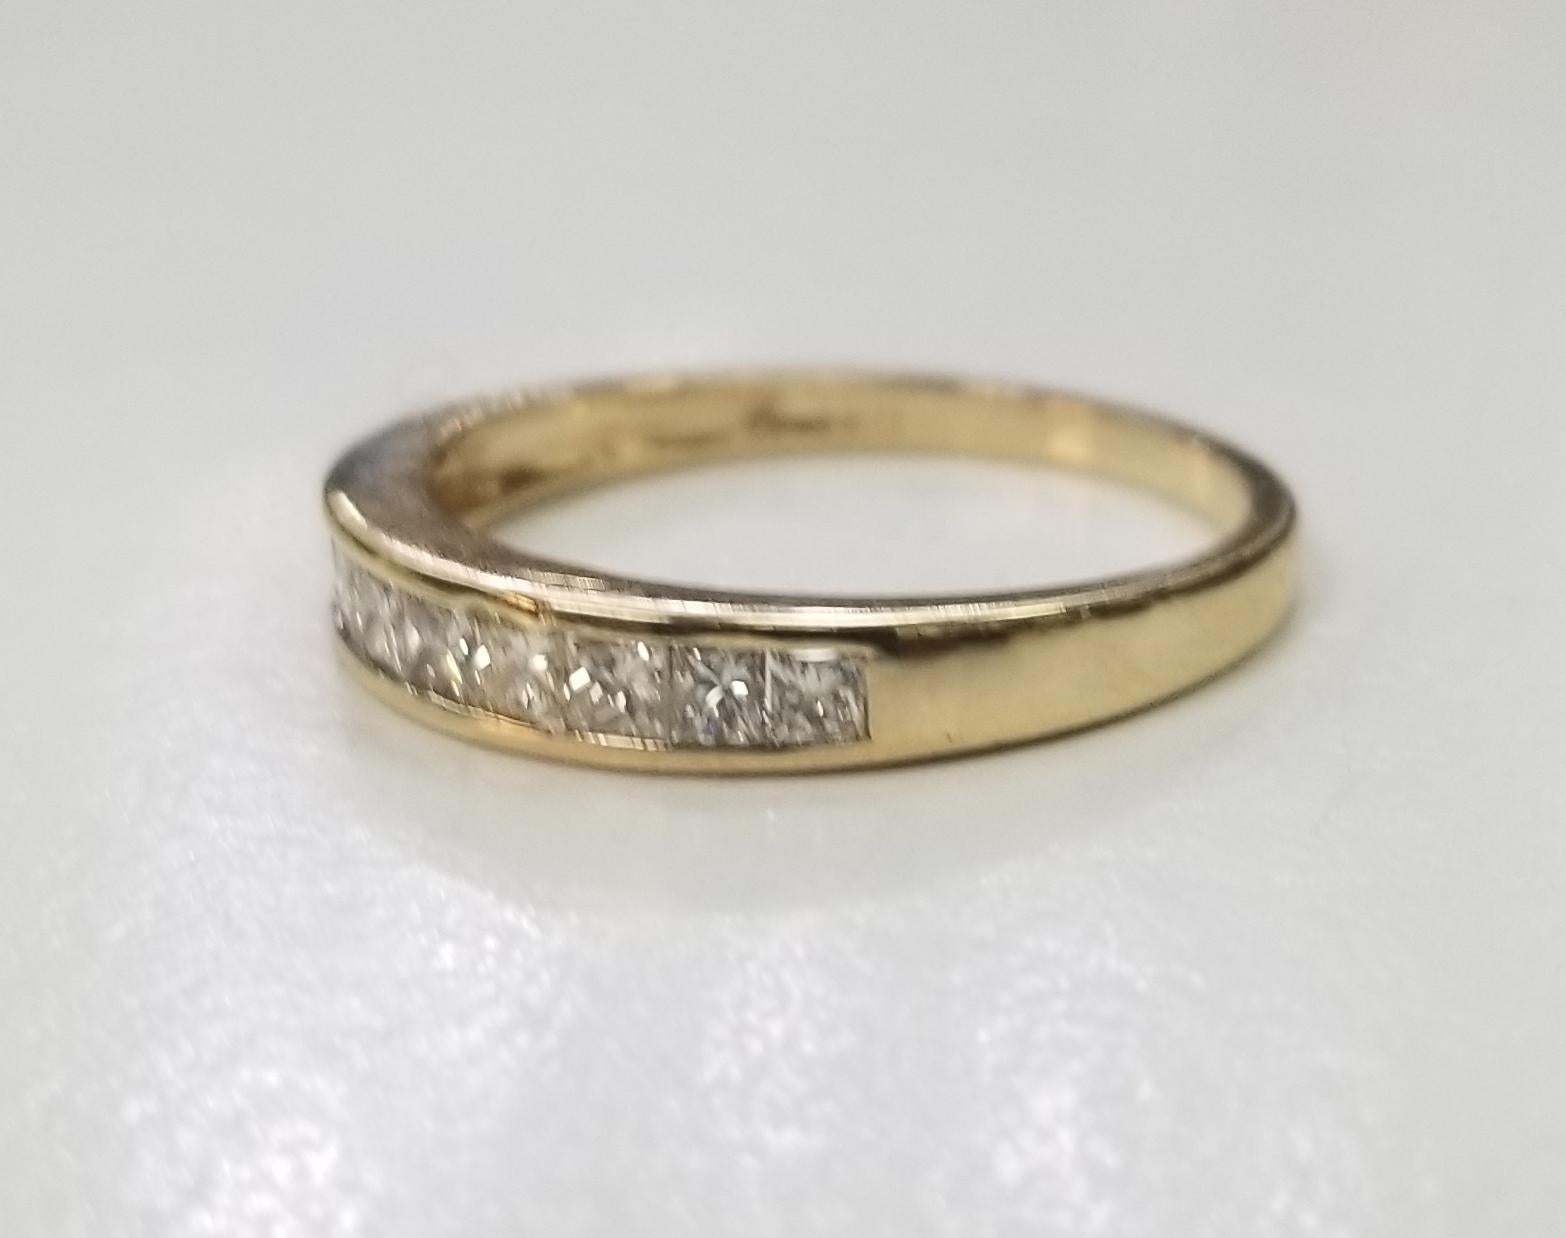 14k Gelbgold Diamant Prinzessinnenschliff Ehering, 
Spezifikationen:
    hauptstein: DIAMANT   
    diamanten: 10 STCK
    karat Gesamtgewicht: 0,65
    farbe: G
    klarheit: VS2
    metall: GOLD
    typ: Ring
    gewicht: 2,1 g
    größe: 7.25 US
